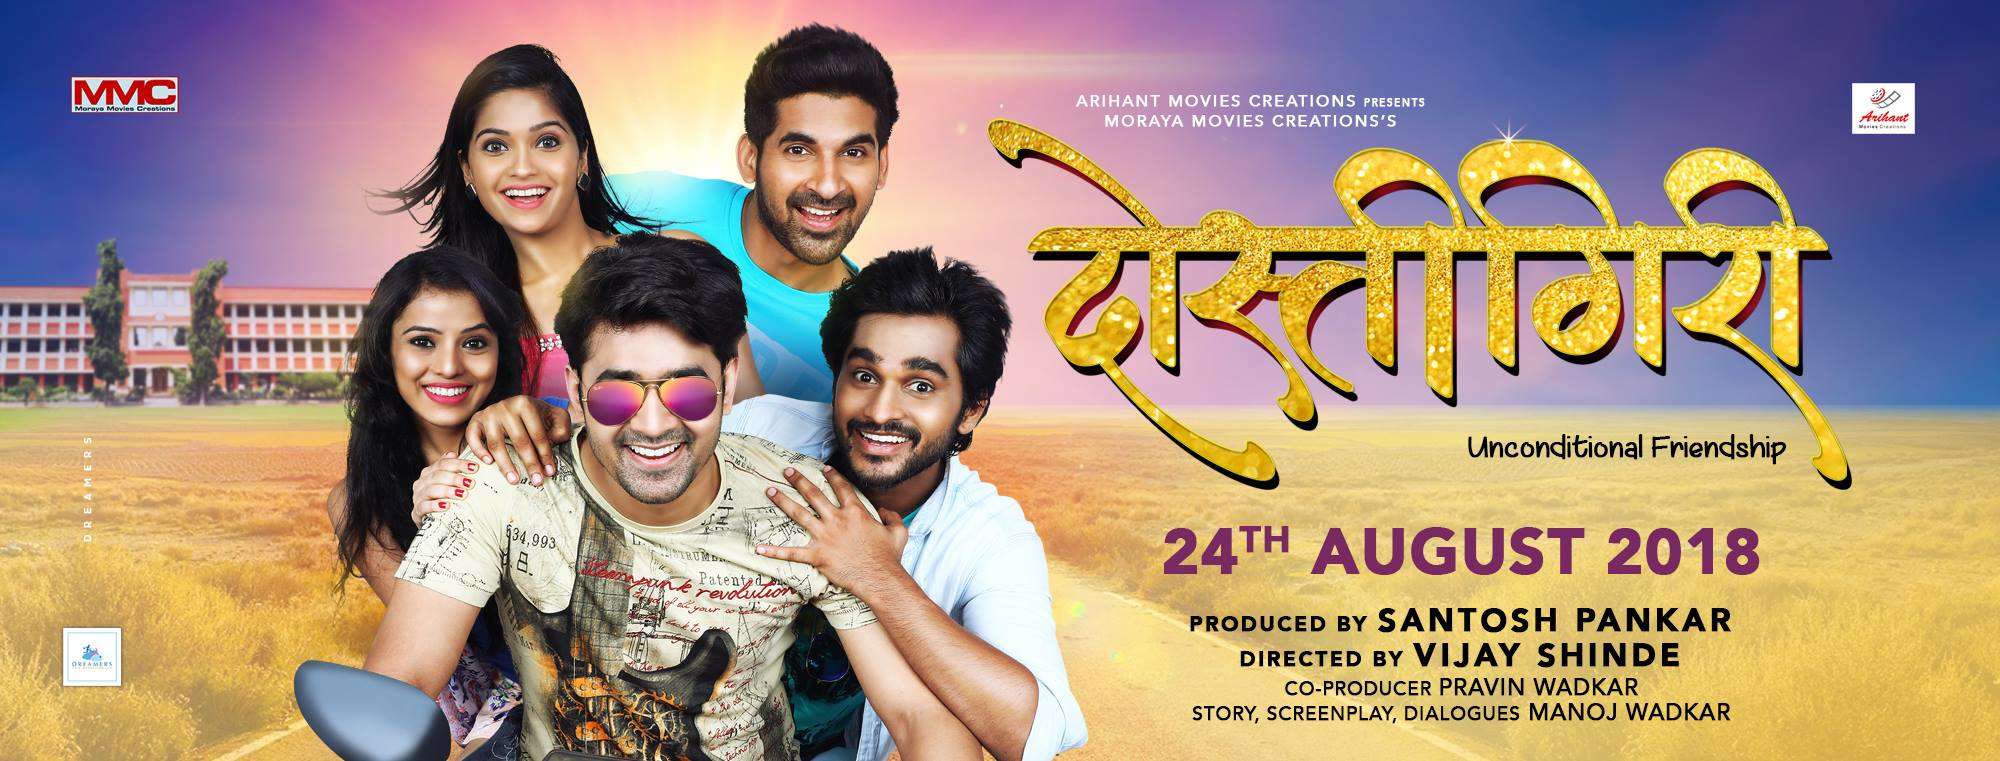 latest marathi movies 2018